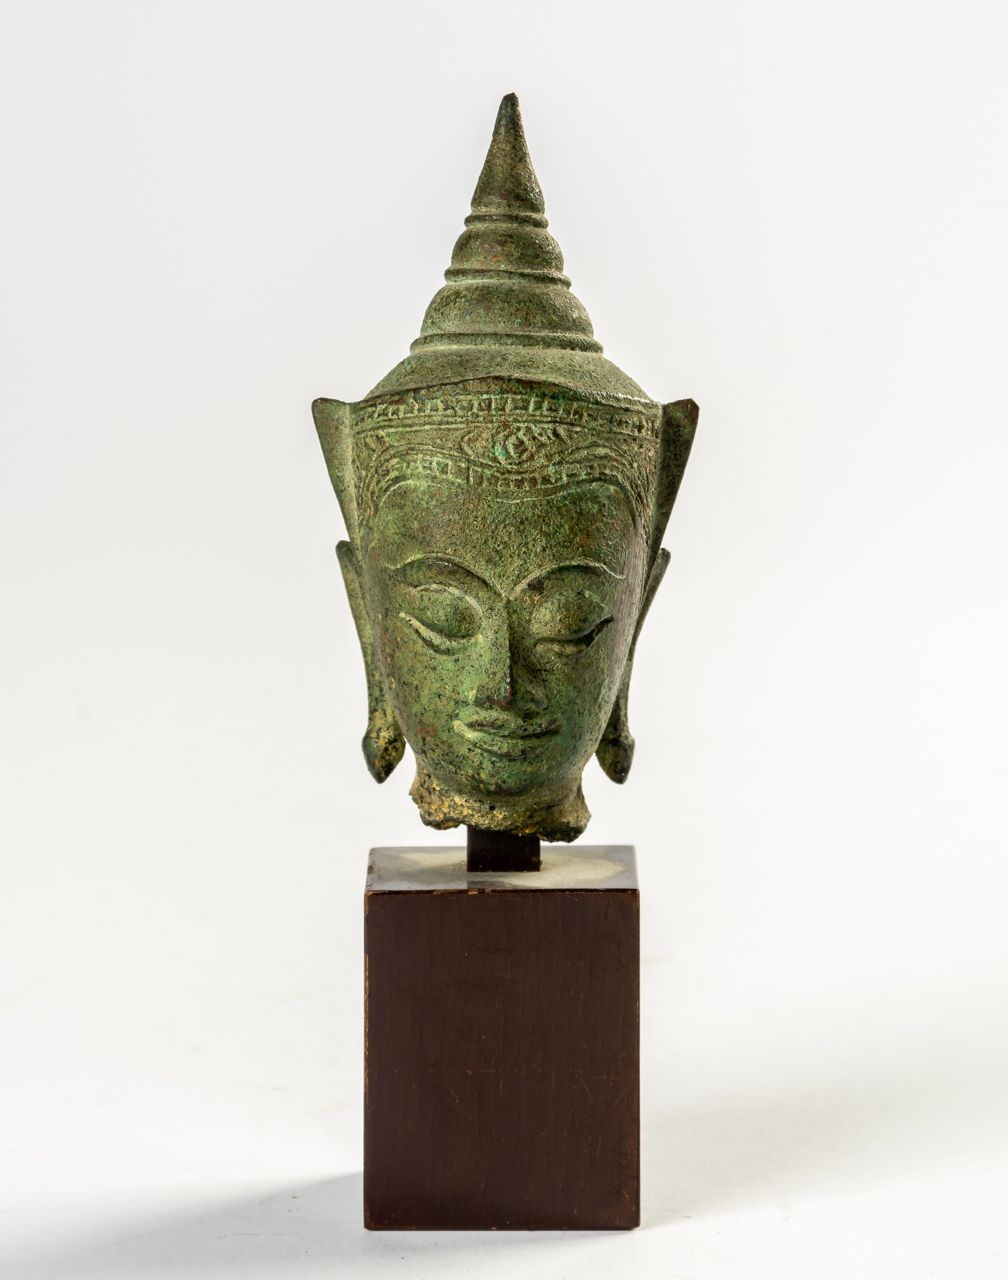 BUDDHA-KOPF HEAD OF BUDDHA_x000D_

Thailand, 19th c. Or older_x000D_

9 cm (with&hellip;